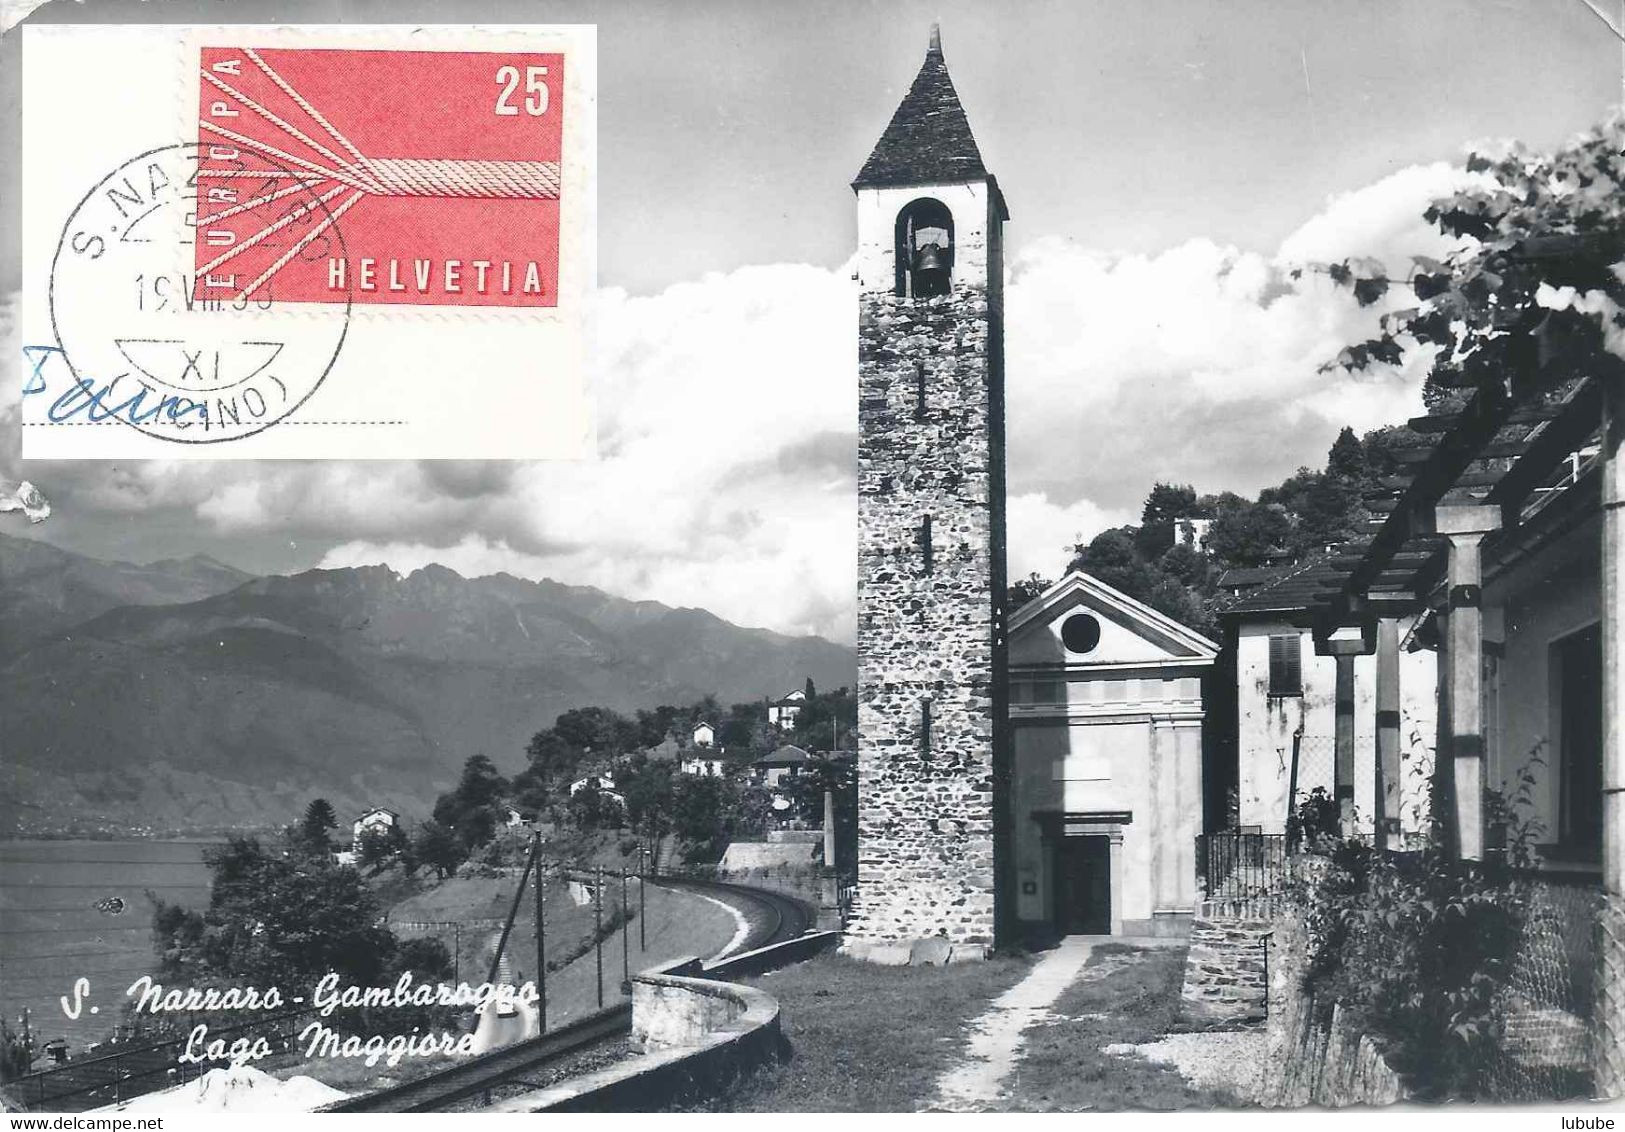 San Nazzaro (Gambarogno) - Chiesa         1958 - Arogno